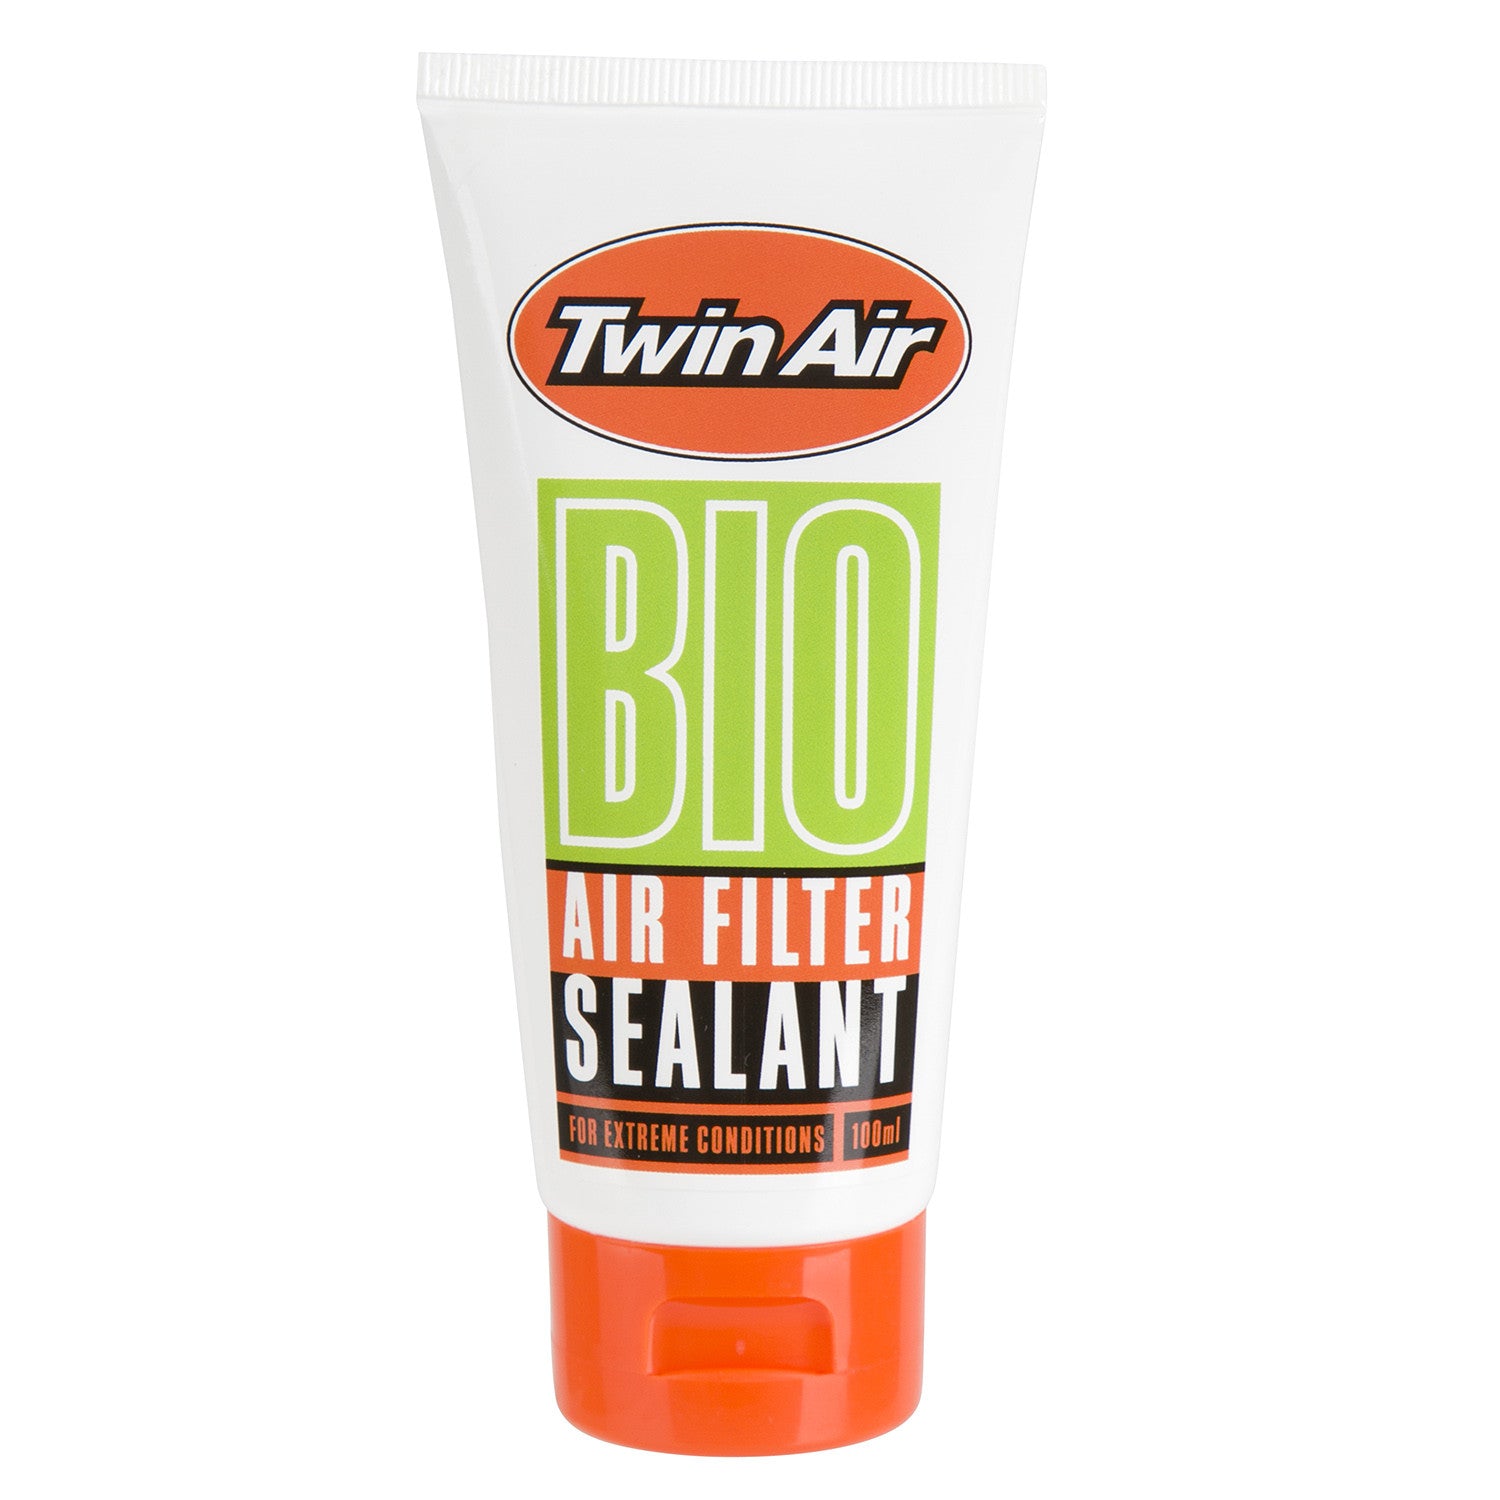 Twin Air - Bio Air Filter Sealant Grease